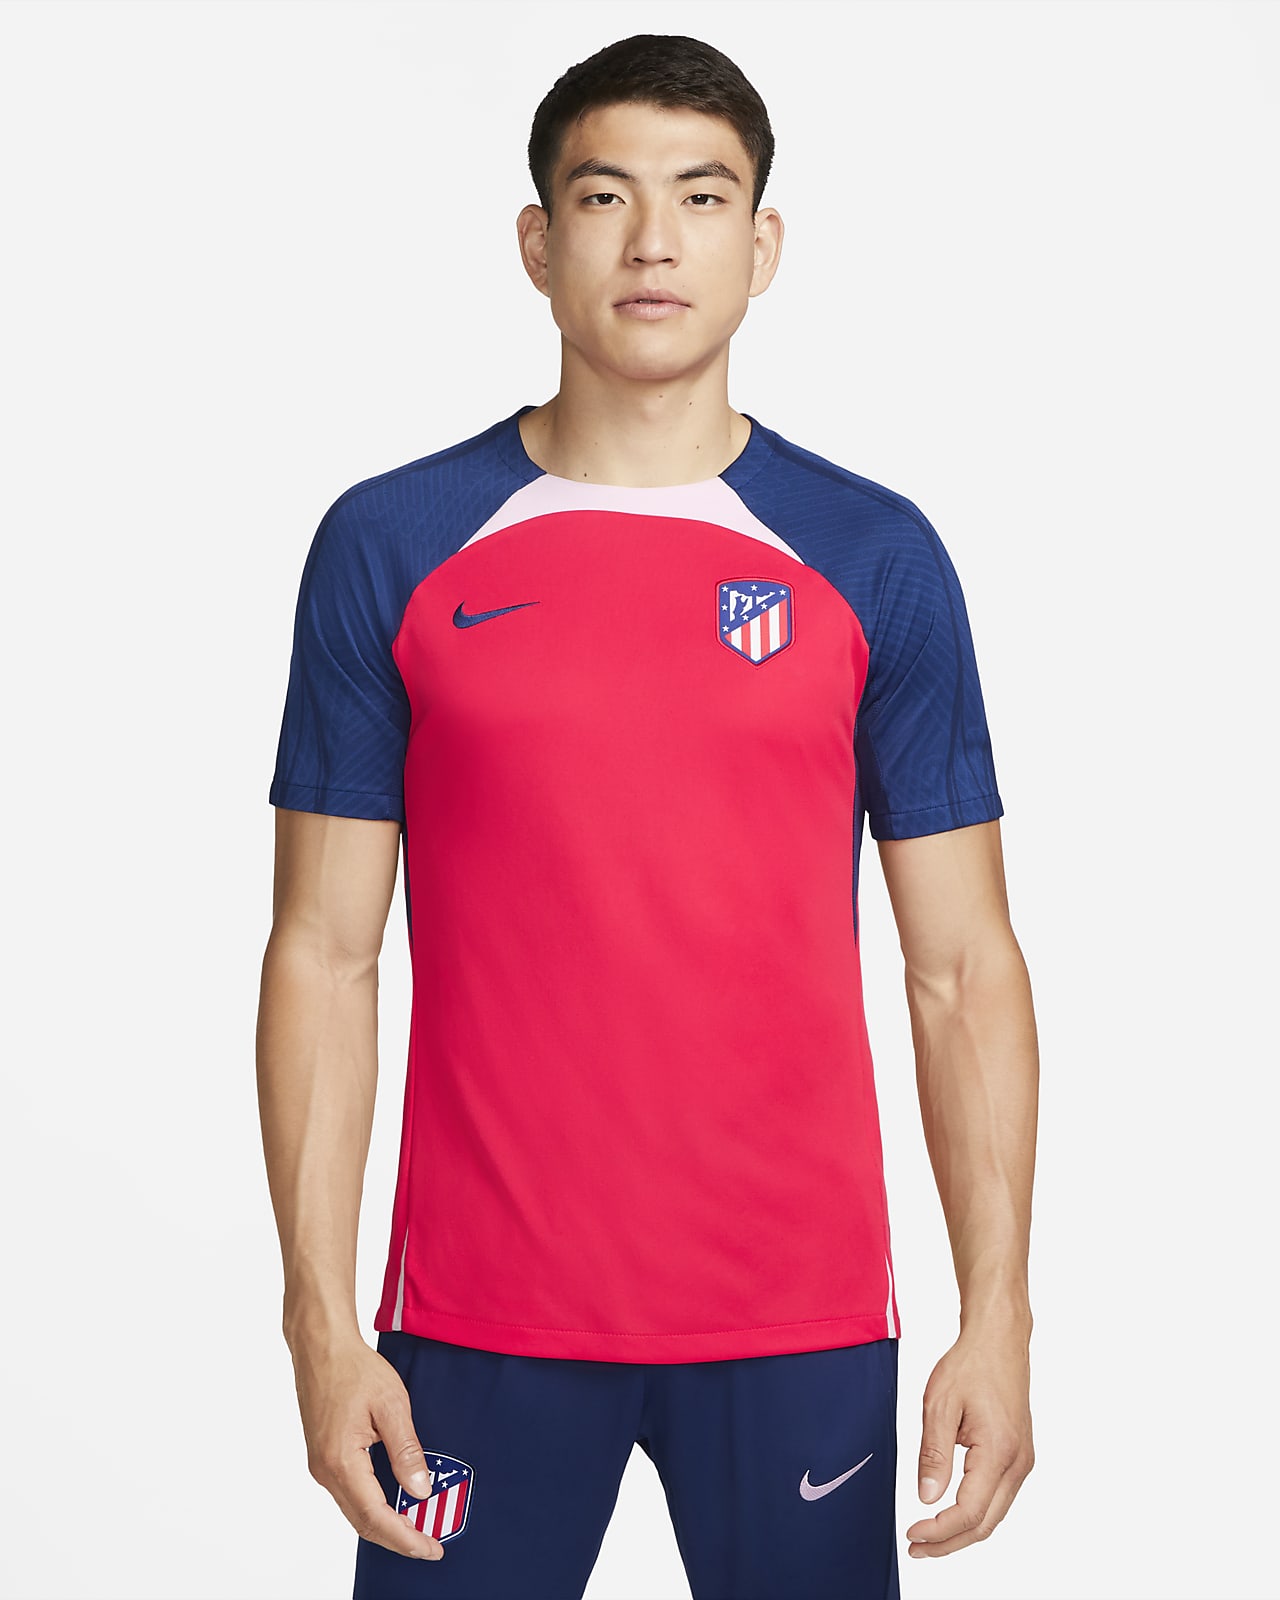 Ανδρική πλεκτή ποδοσφαιρική μπλούζα Nike Dri-FIT Ατλέτικο Μαδρίτης Strike